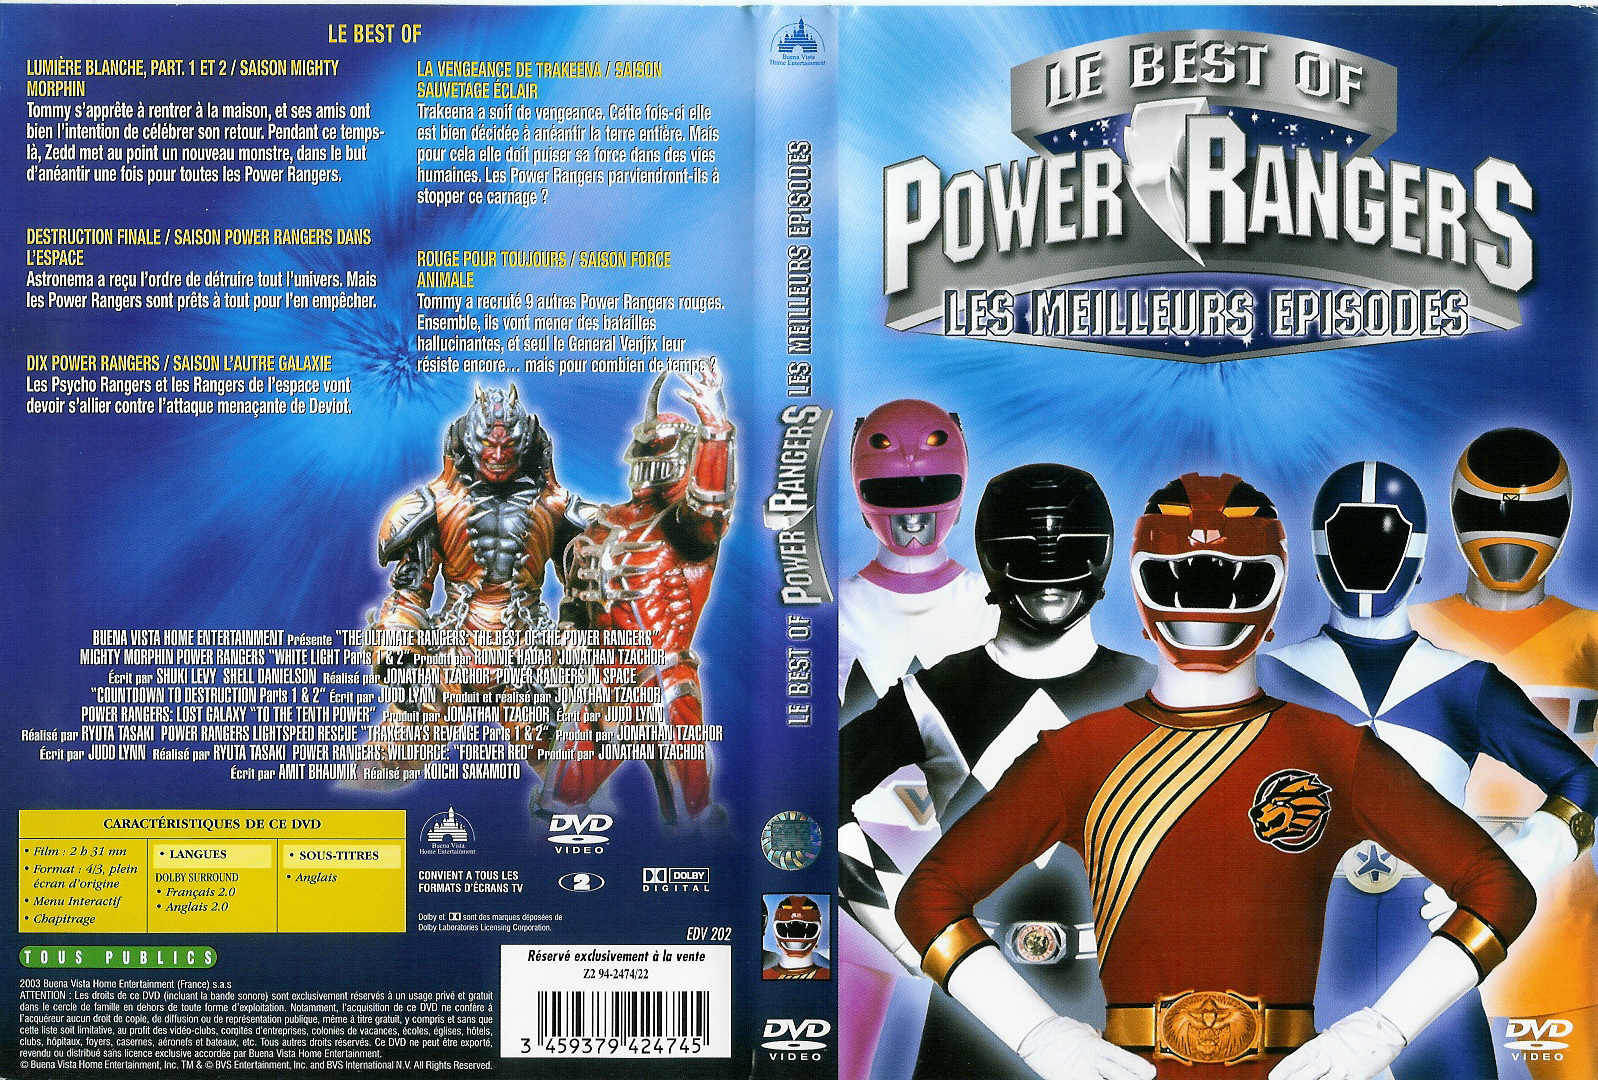 Jaquette DVD Power rangers - Les meilleurs pisodes